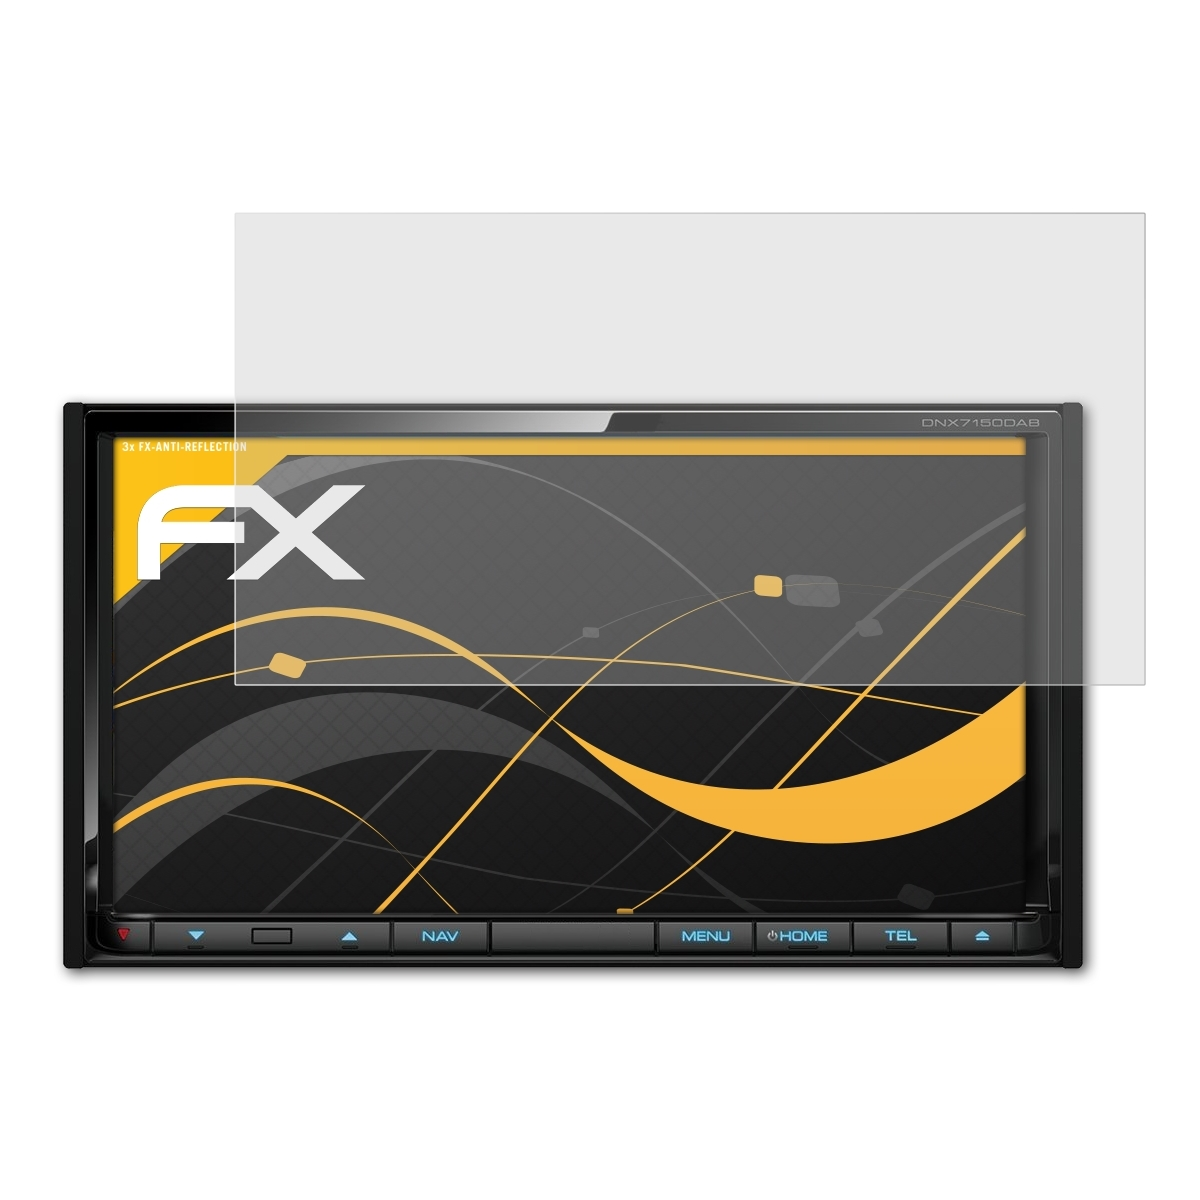 ATFOLIX 3x FX-Antireflex Displayschutz(für Kenwood DNX7150DAB)